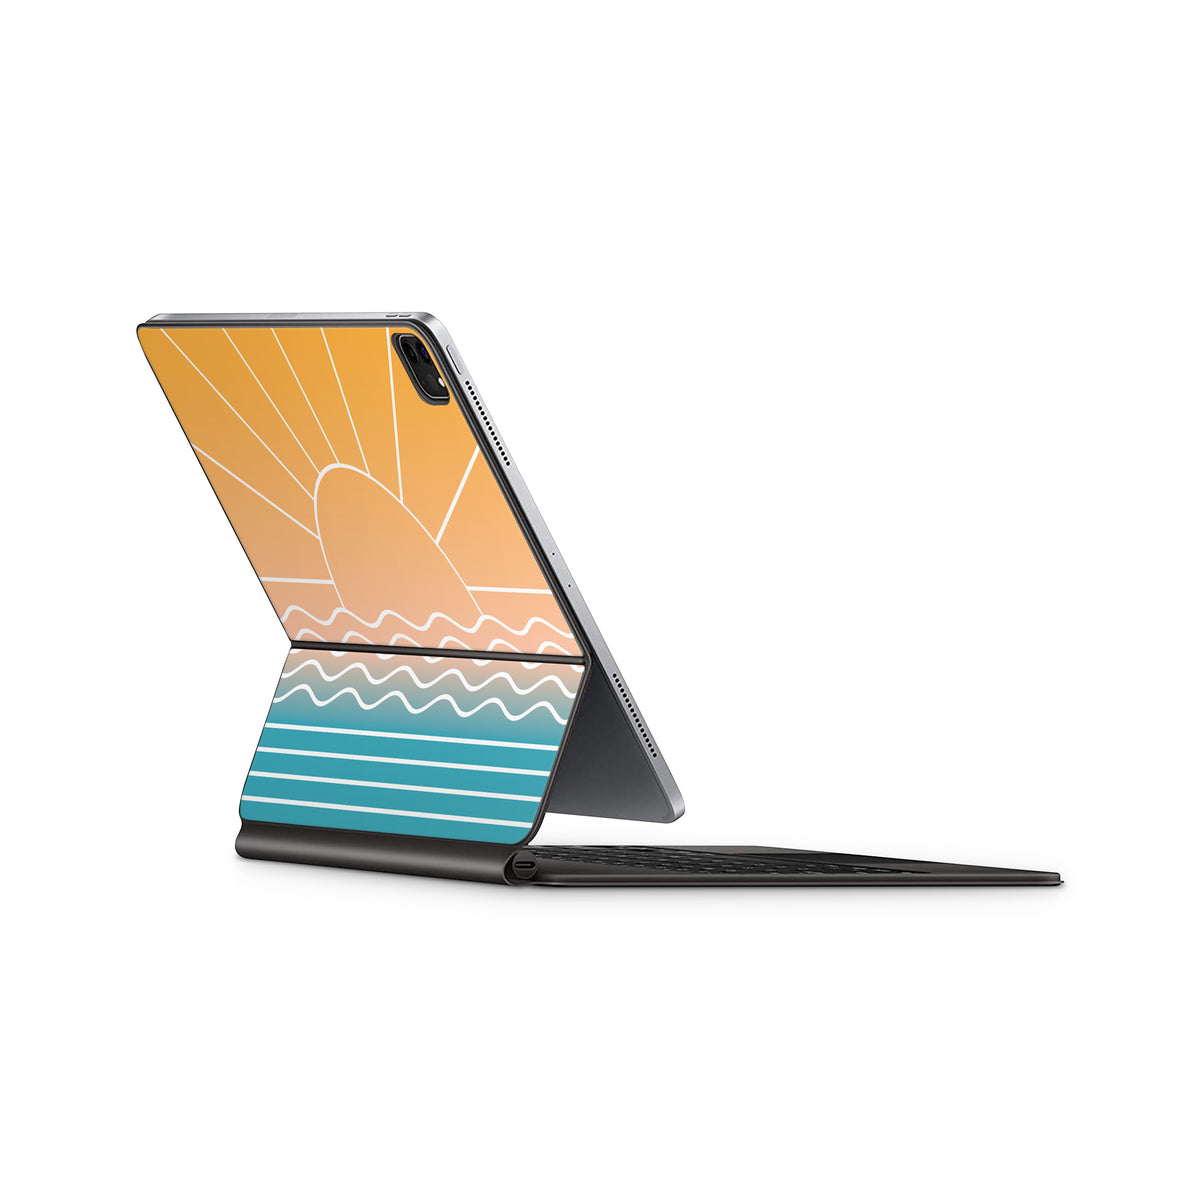 Rays (iPad Magic Keyboard Skin)